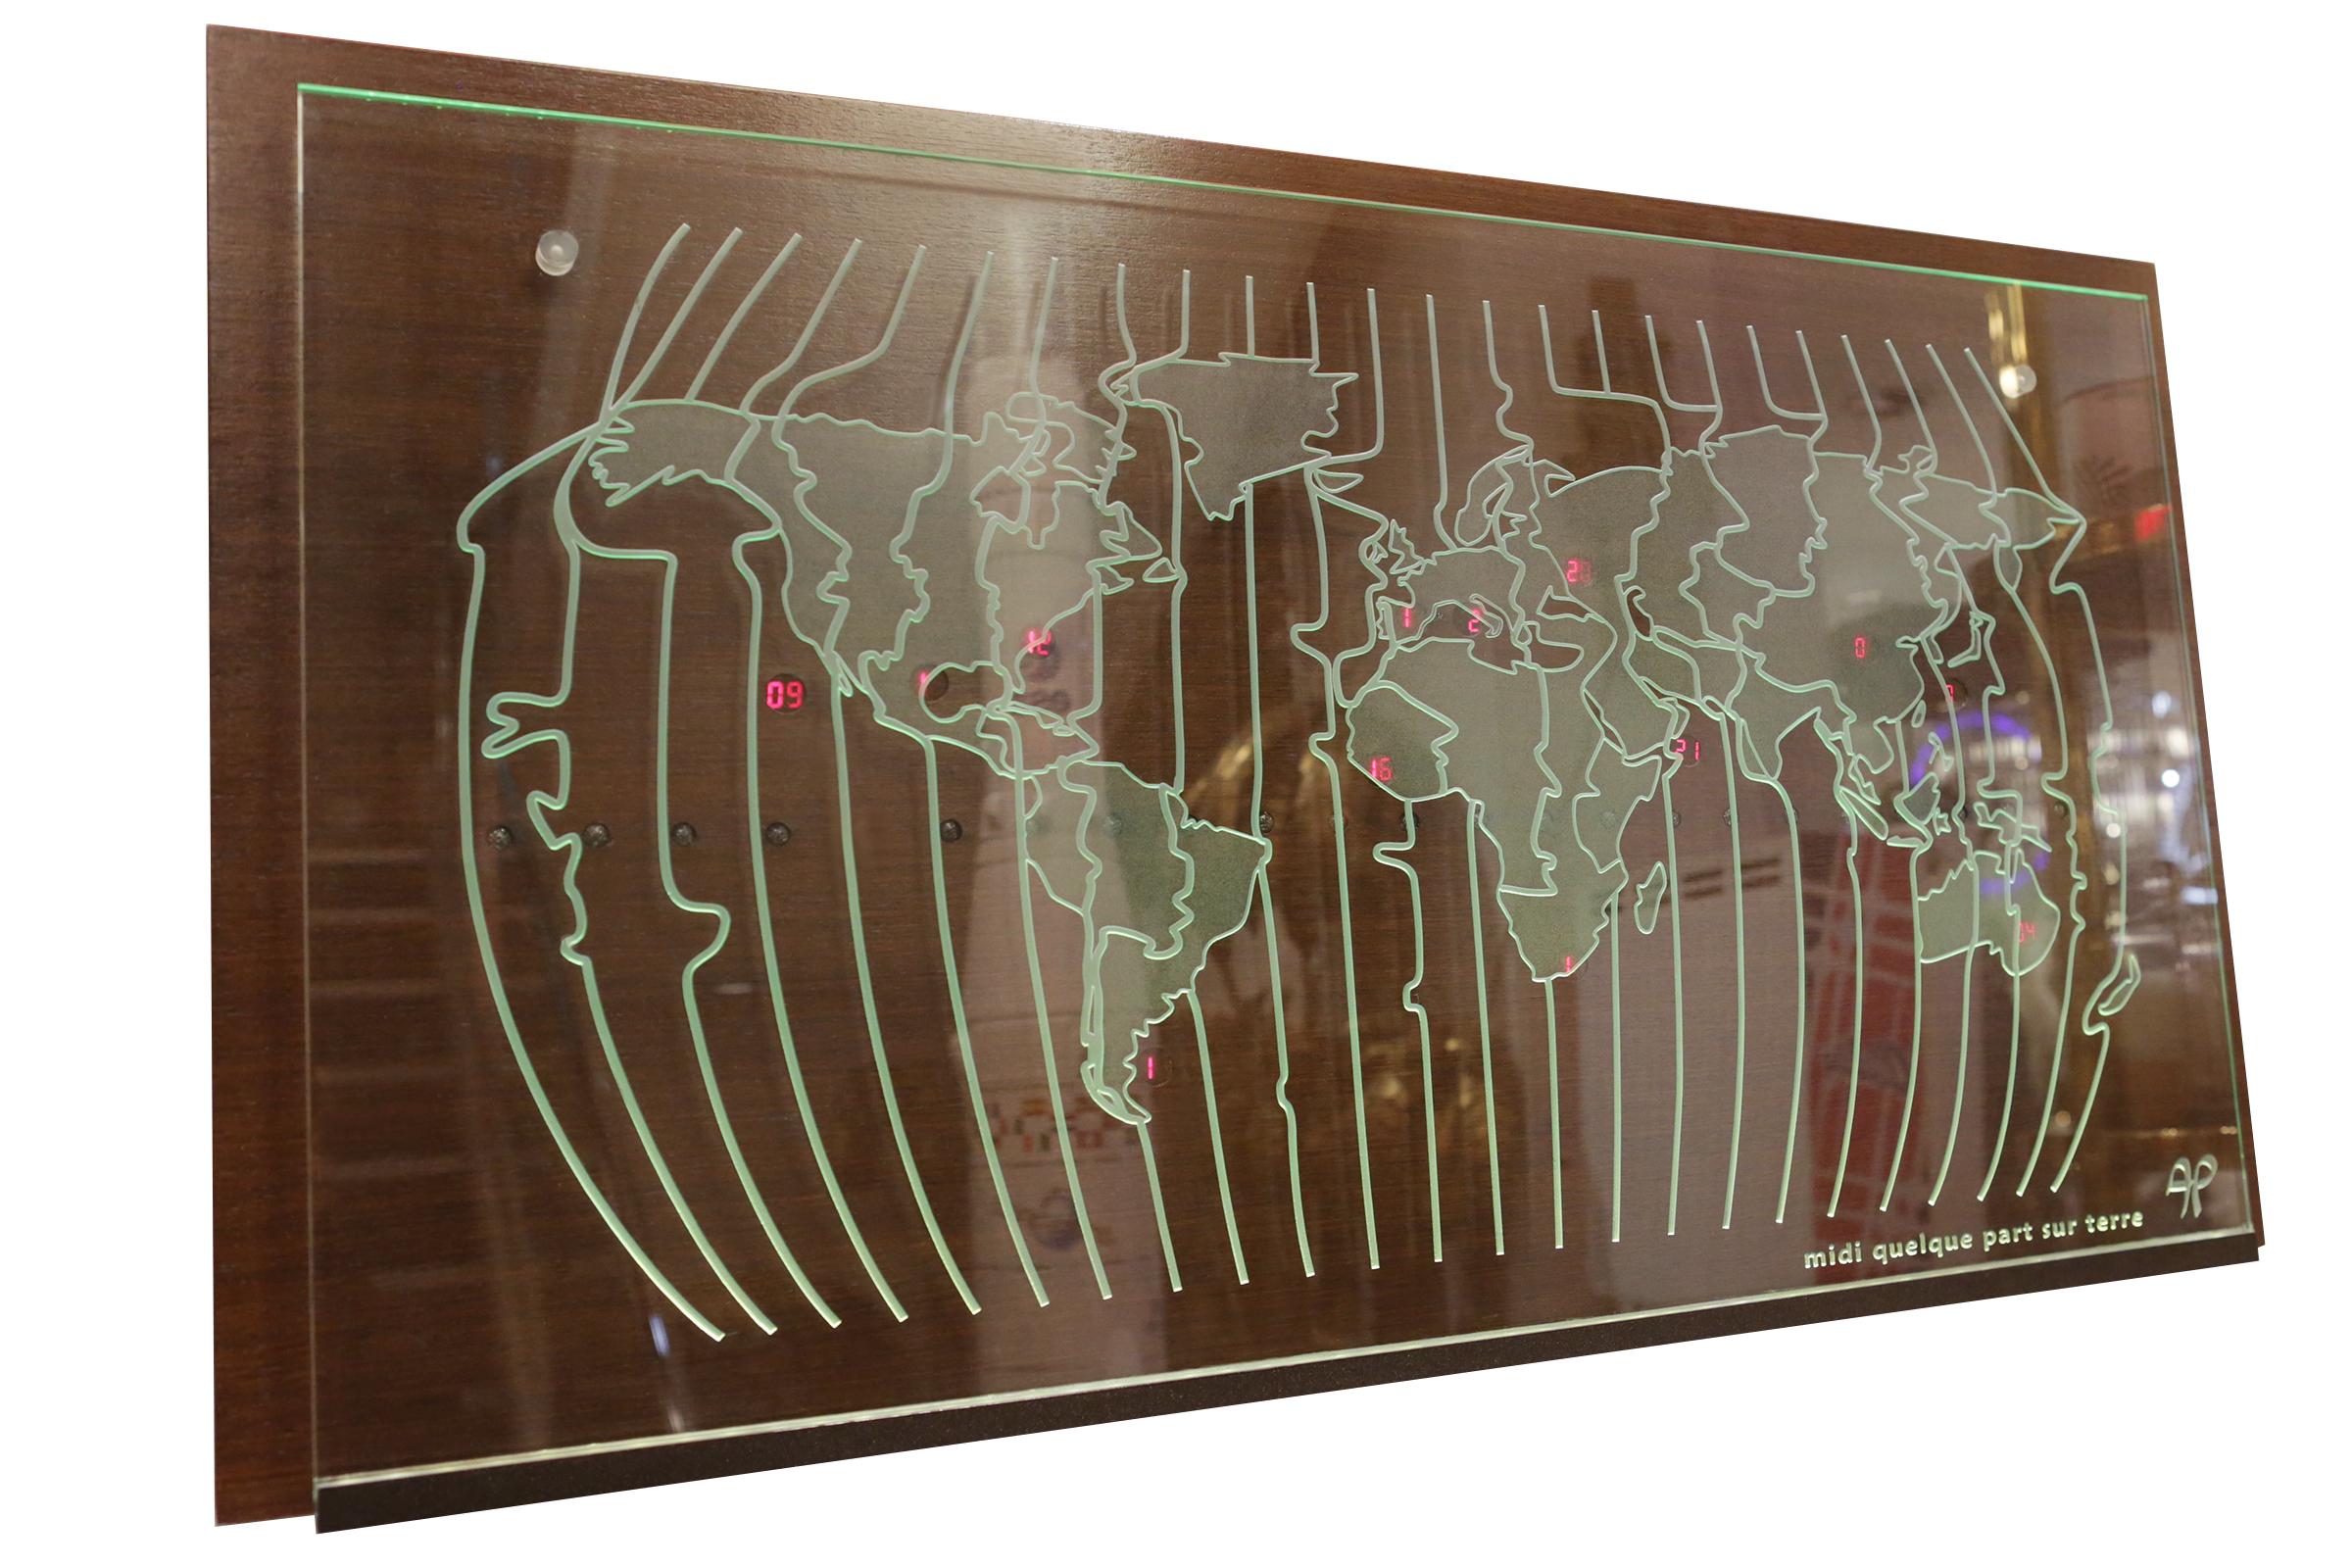 Uhr Weltkarte mit natürlichem massivem Wengue Holz
rückwand, auf der sich verschiedene Zeitzonen befinden
überall auf der Welt. Mit 9 gelben Dioden, die auf
die Äquatorlinien, die die Tageslichtposition angeben.
Mit einer gestochenen Zeichnung